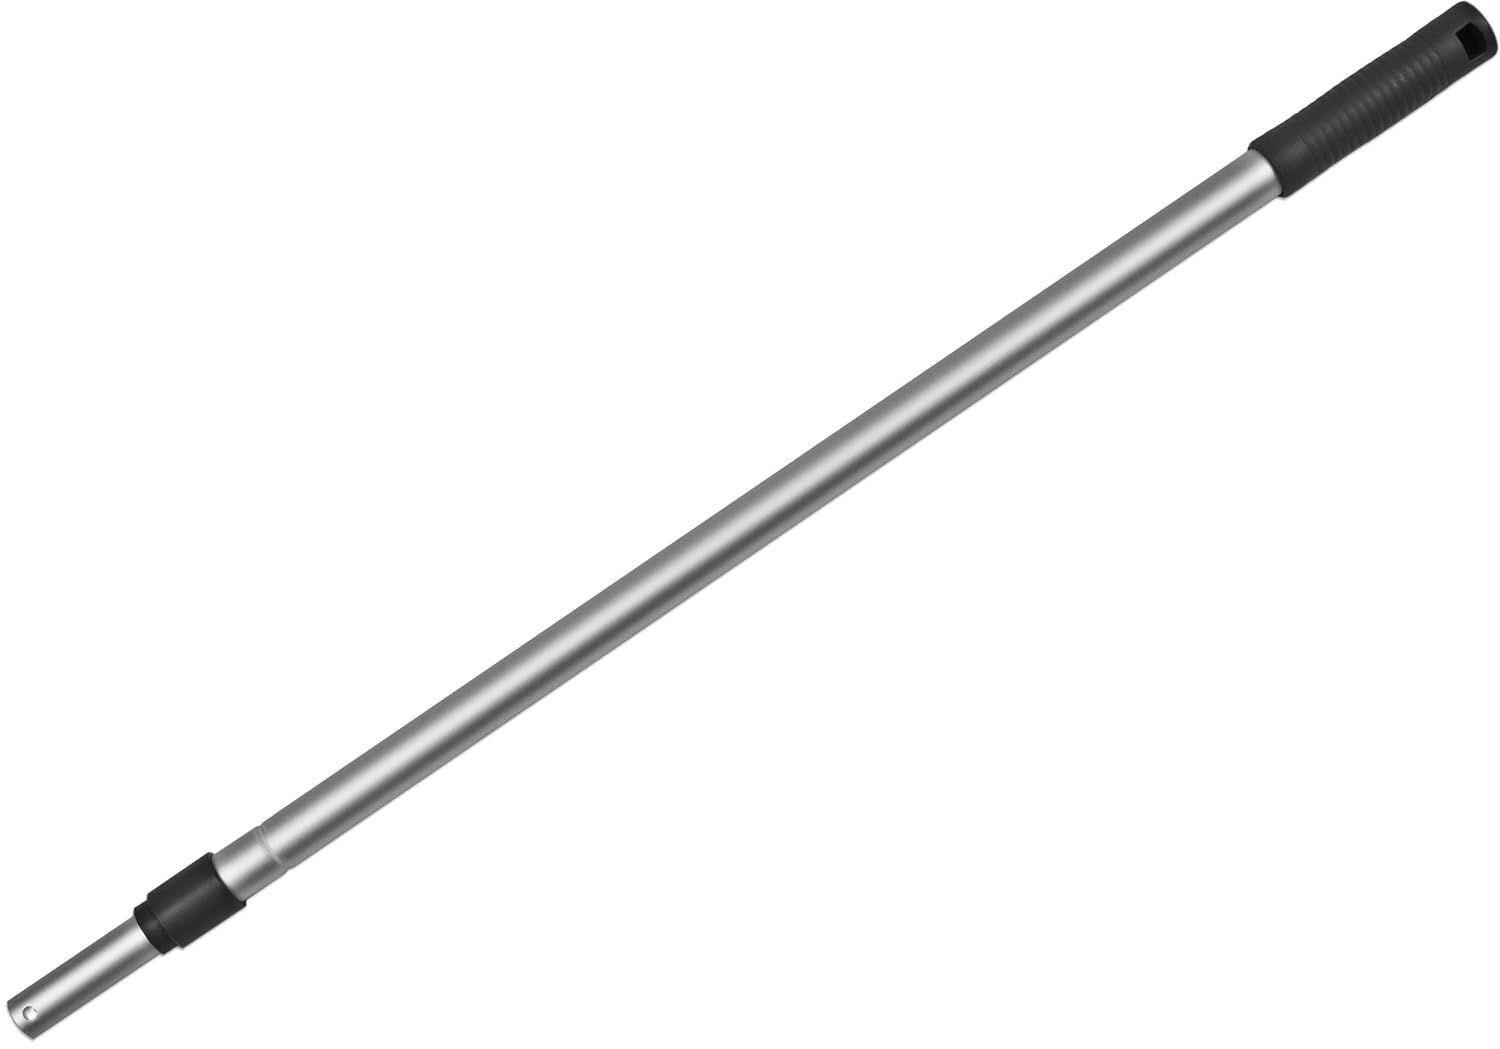 Extendable Aluminum Pole